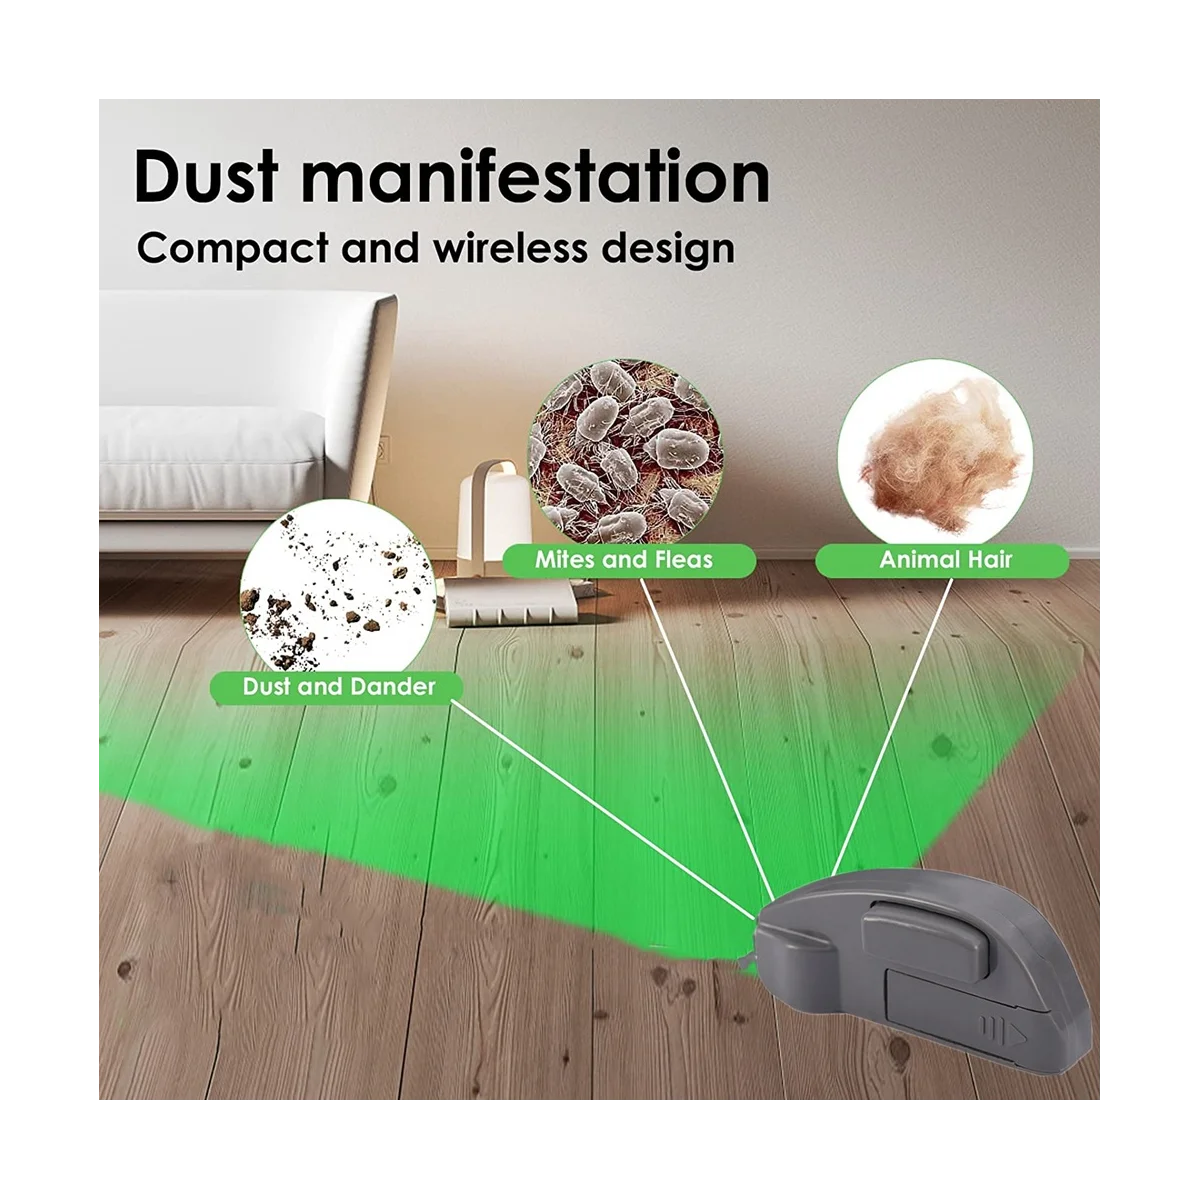 Светодиодный индикатор пыли пылесоса, очищающий от скрытой пыли, шерсти домашних животных, аксессуары для пылесоса для домашнего зоомагазина